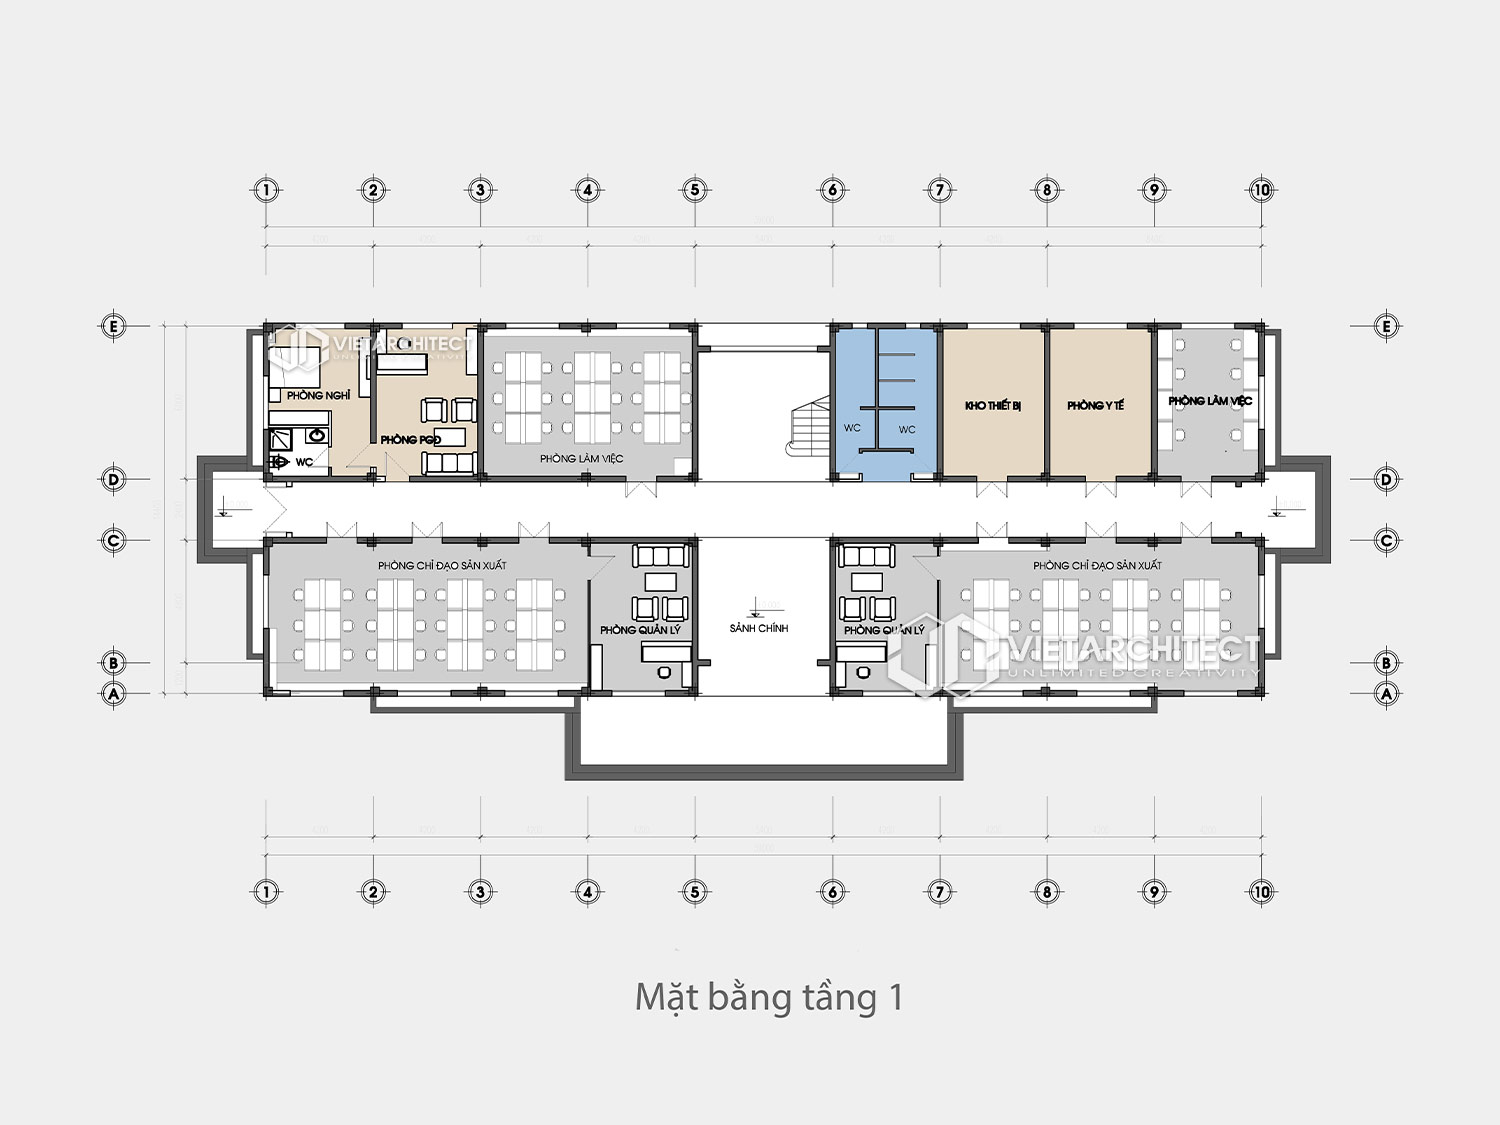 thiết kế nhà điều hành sông chanh mặt bằng tầng 1